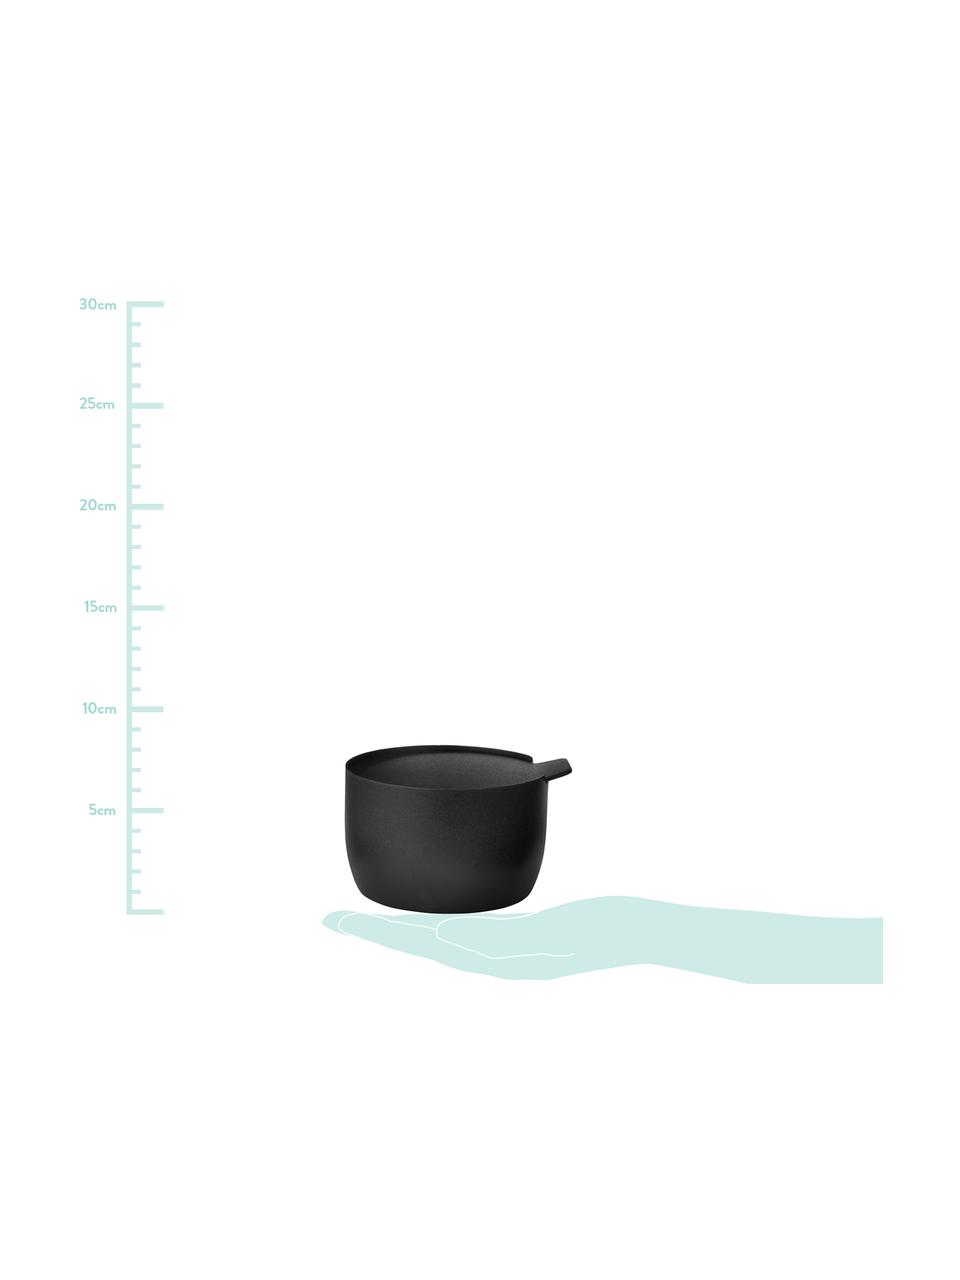 Zuckerdose Collar in Schwarz matt, Edelstahl mit Teflonbeschichtung, Schwarz, Ø 8 x H 6 cm